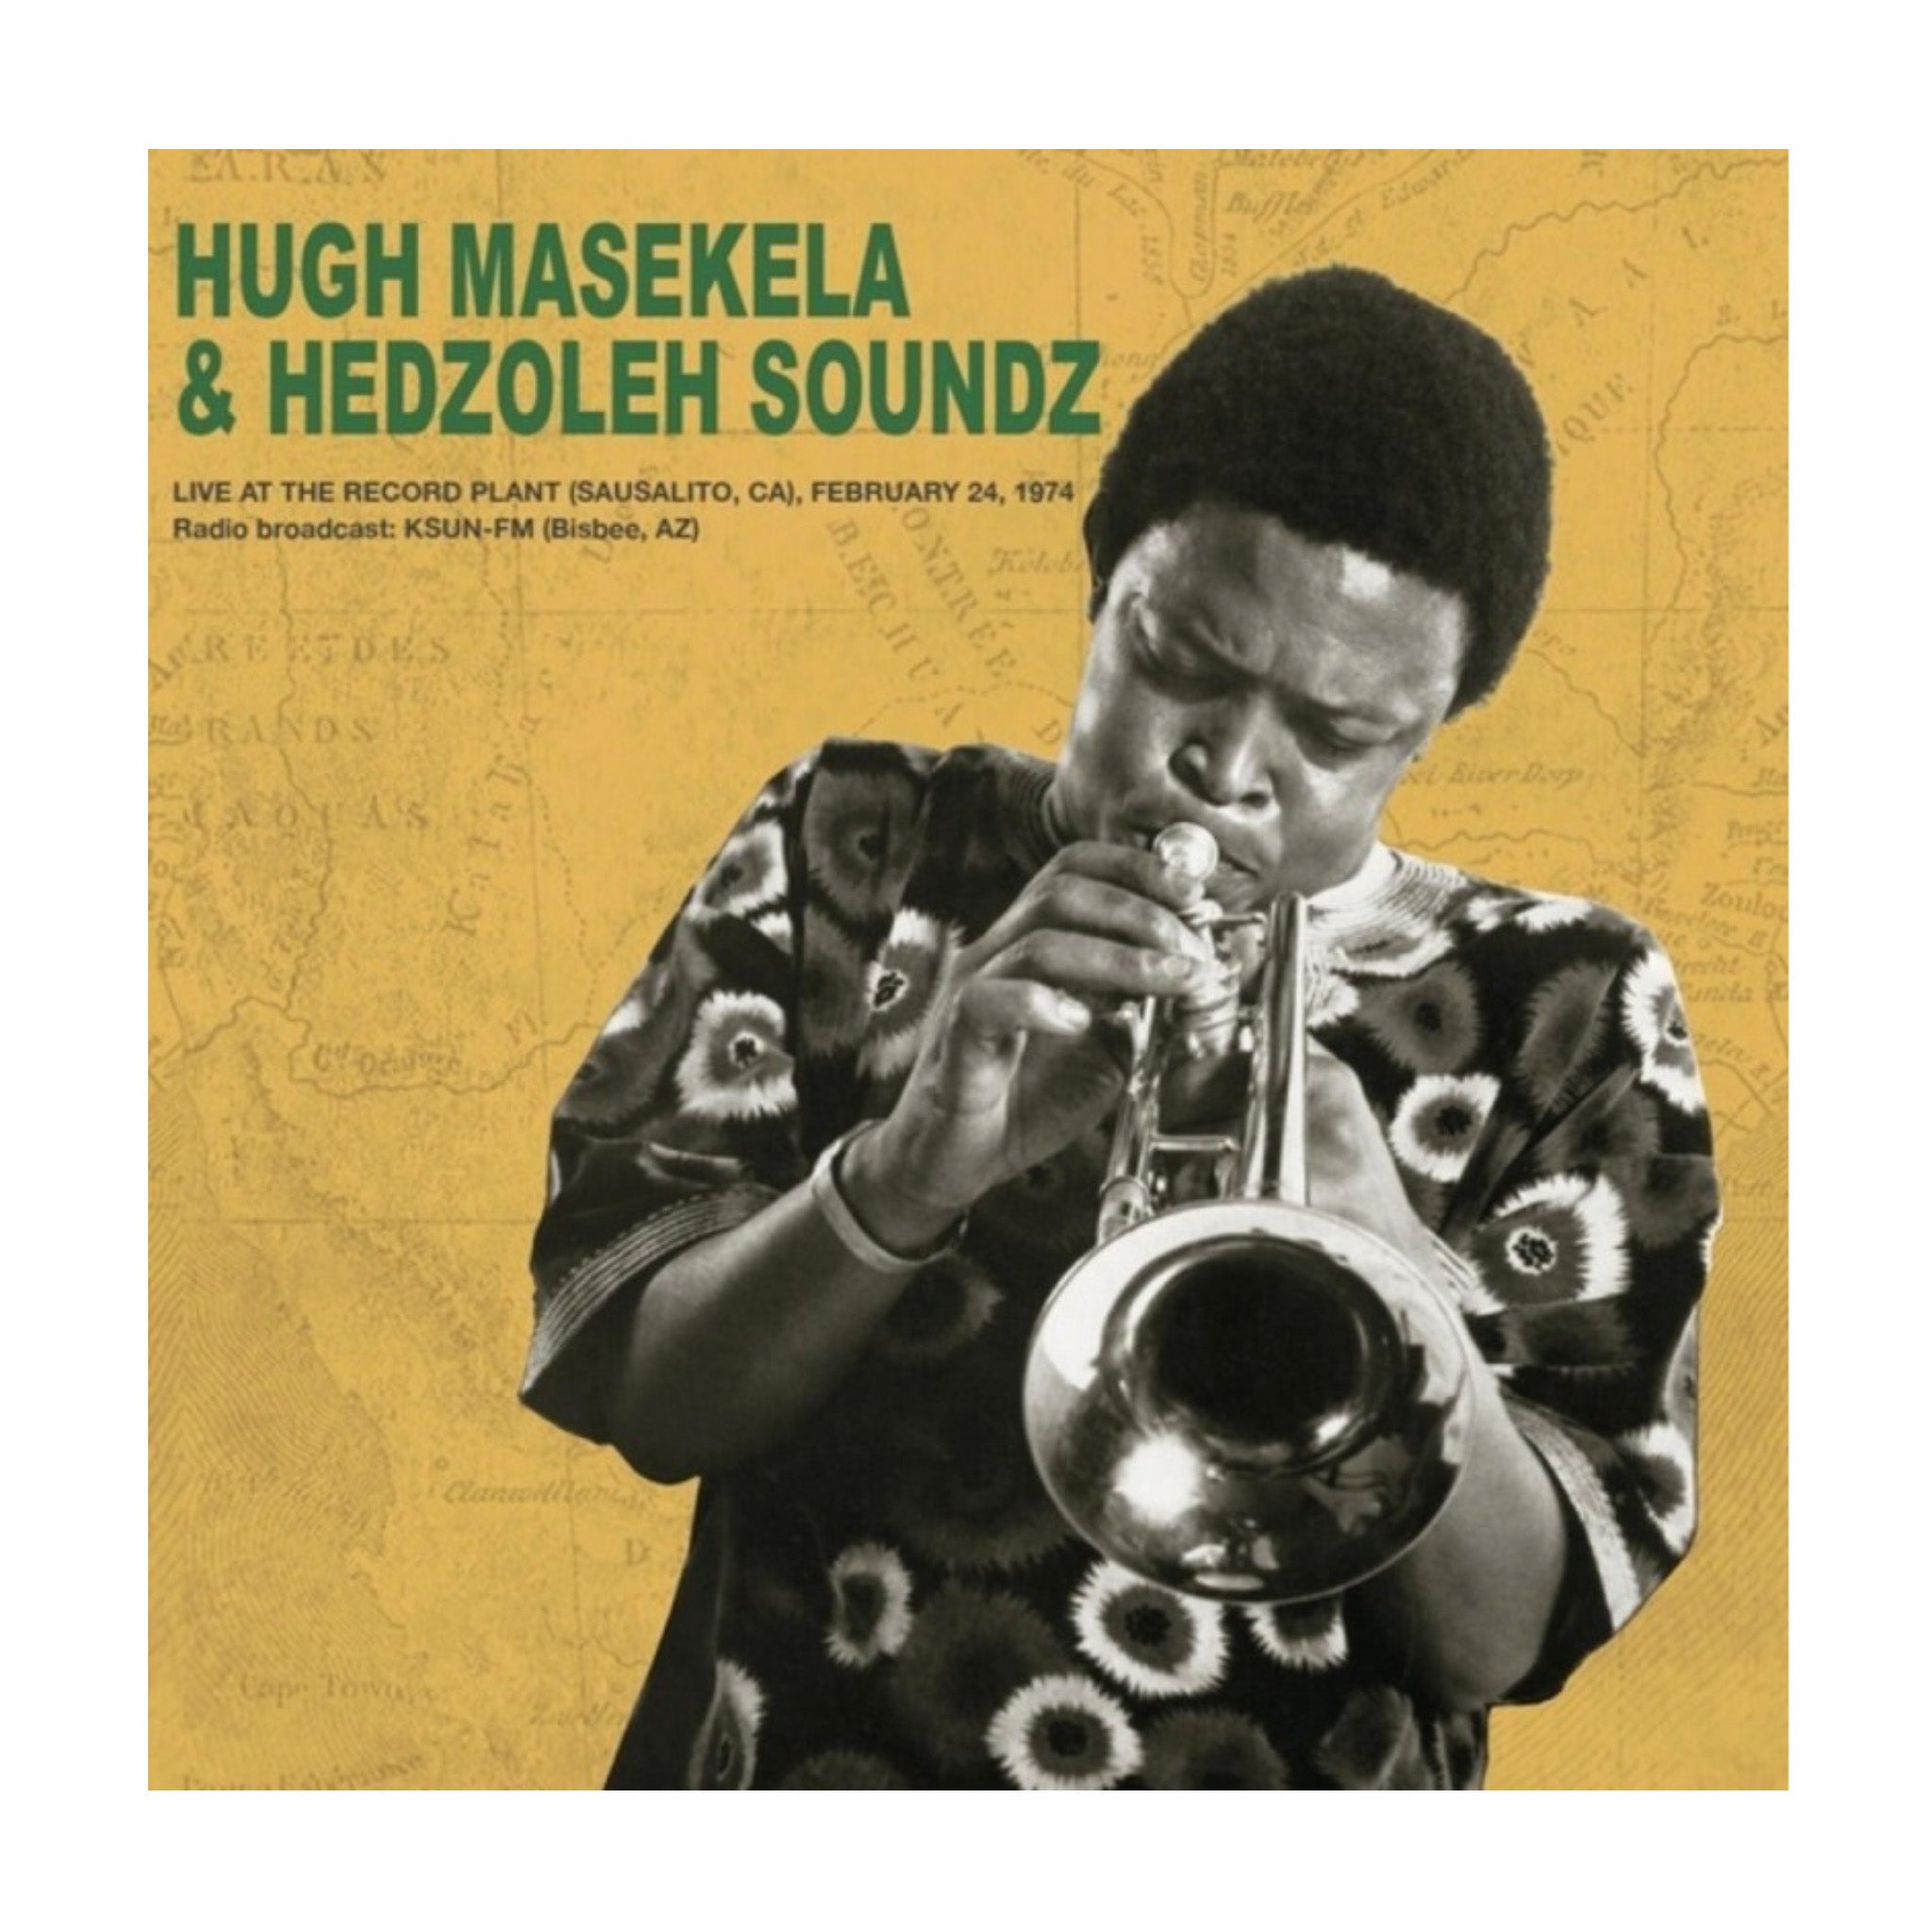 Il vinile, Hugh Masekela & Hedzoleh Soundz - Live At The Record Plant 1974 2LP